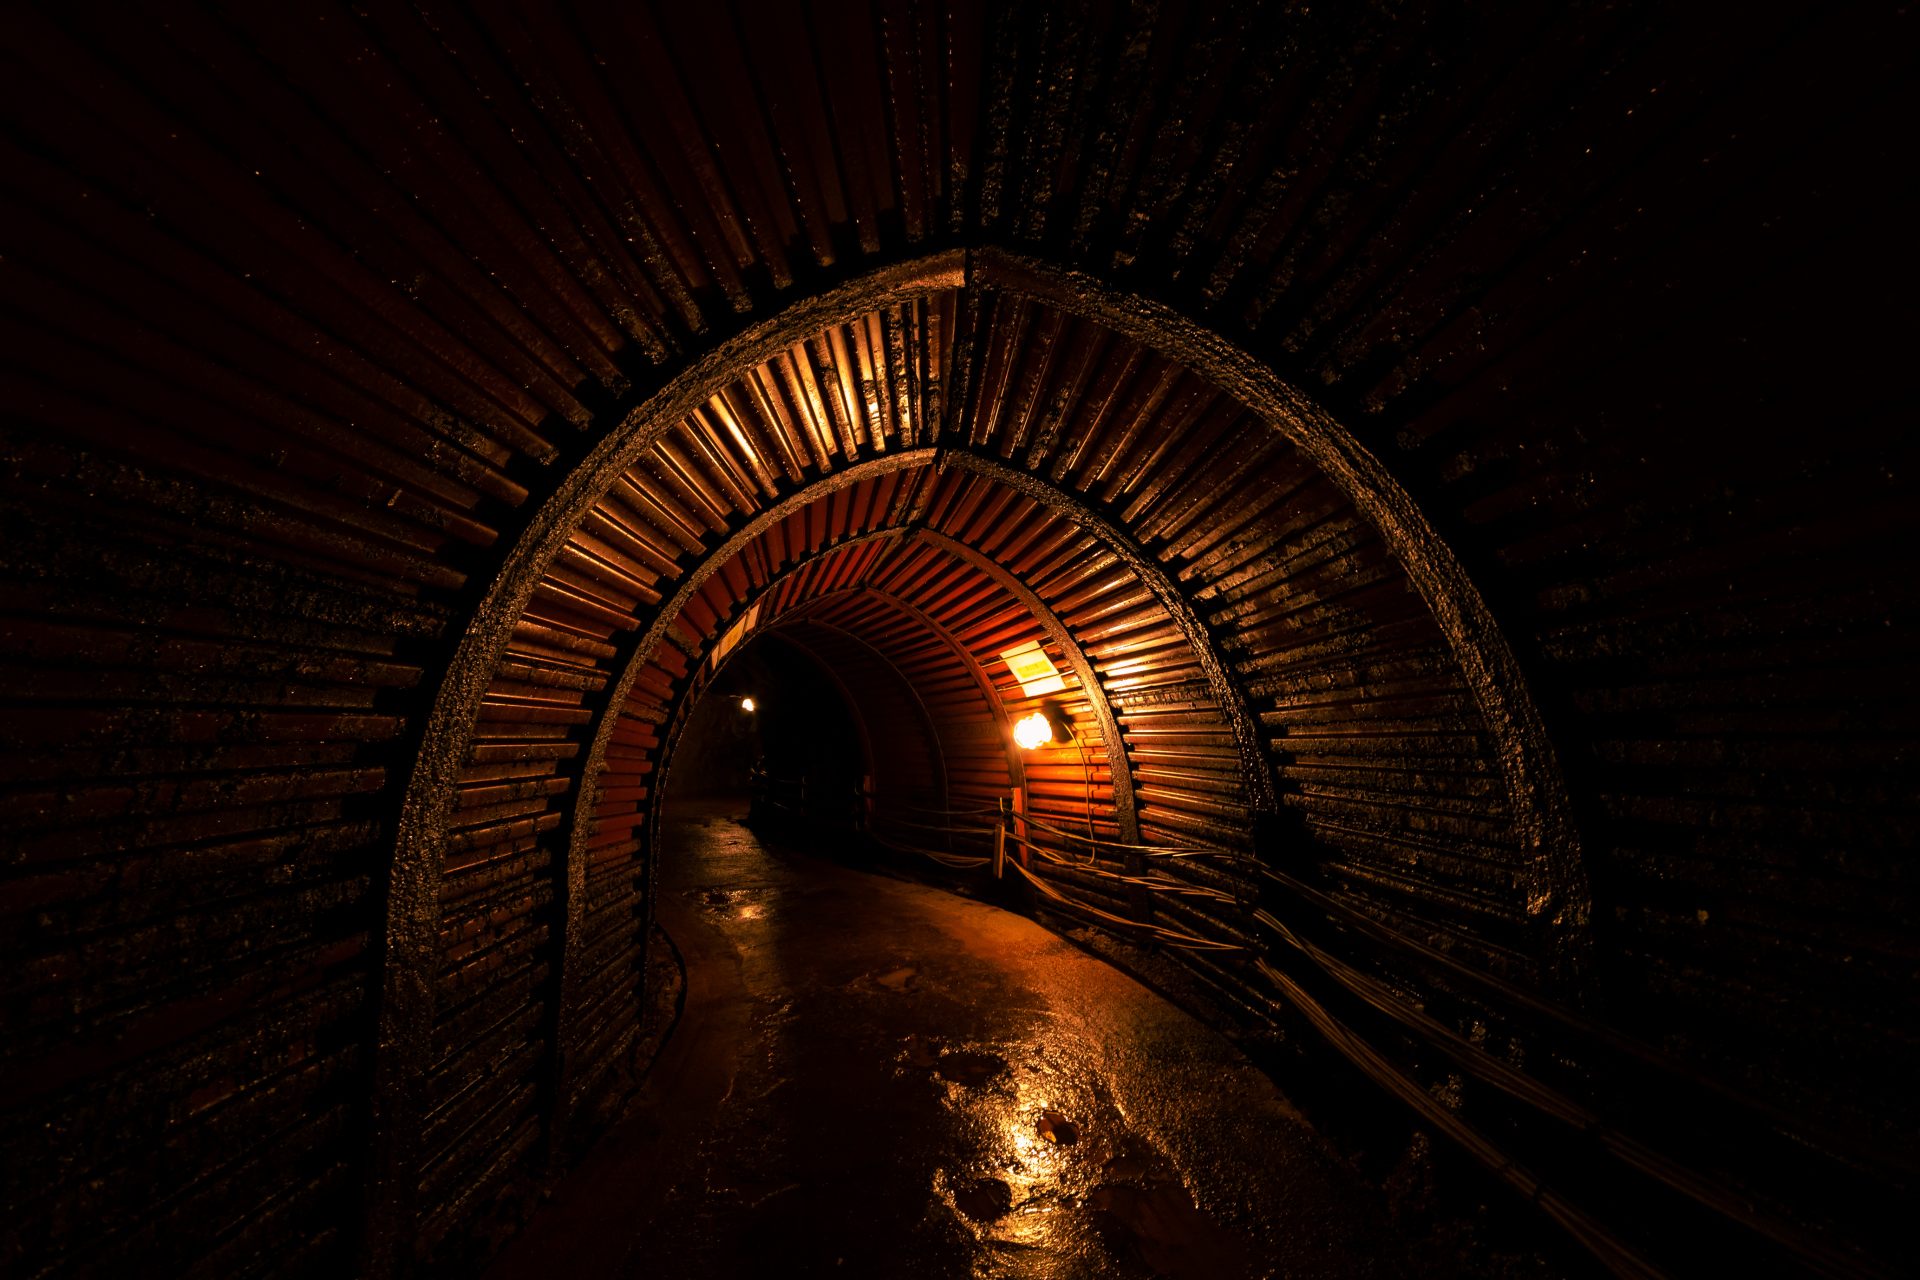 El oscuro túnel está a 13ºC (55°F) todo el año, fresco en verano y bastante cálido en invierno.